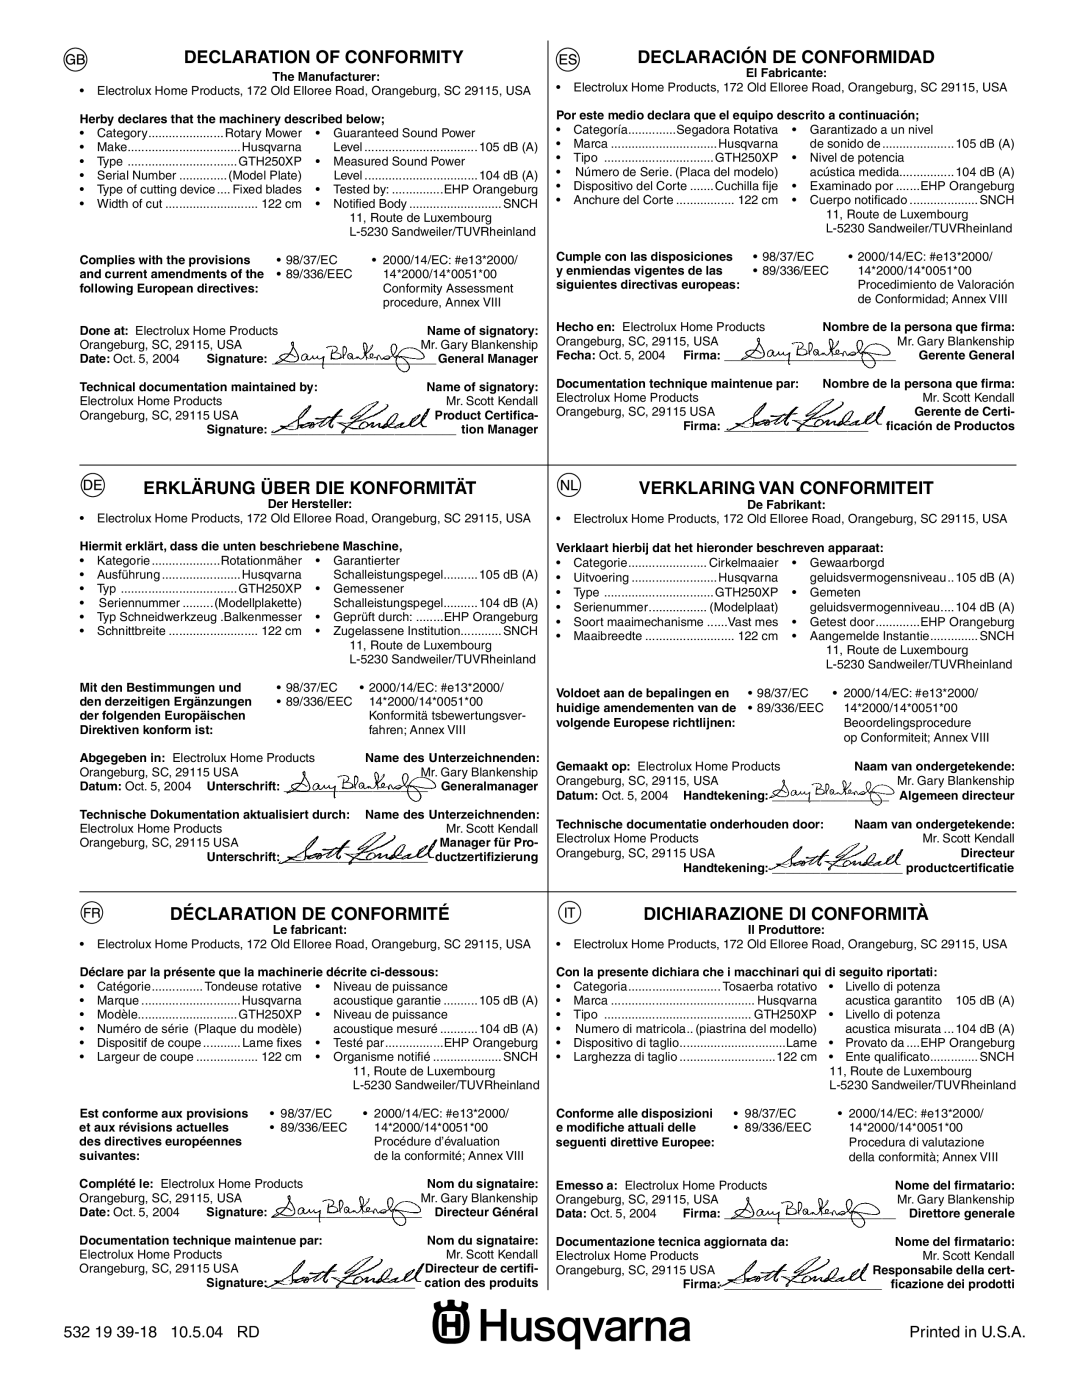 Husqvarna GTH250XP instruction manual Declaration Of Conformity, Declaración De Conformidad, Erklärung Über Die Konformität 